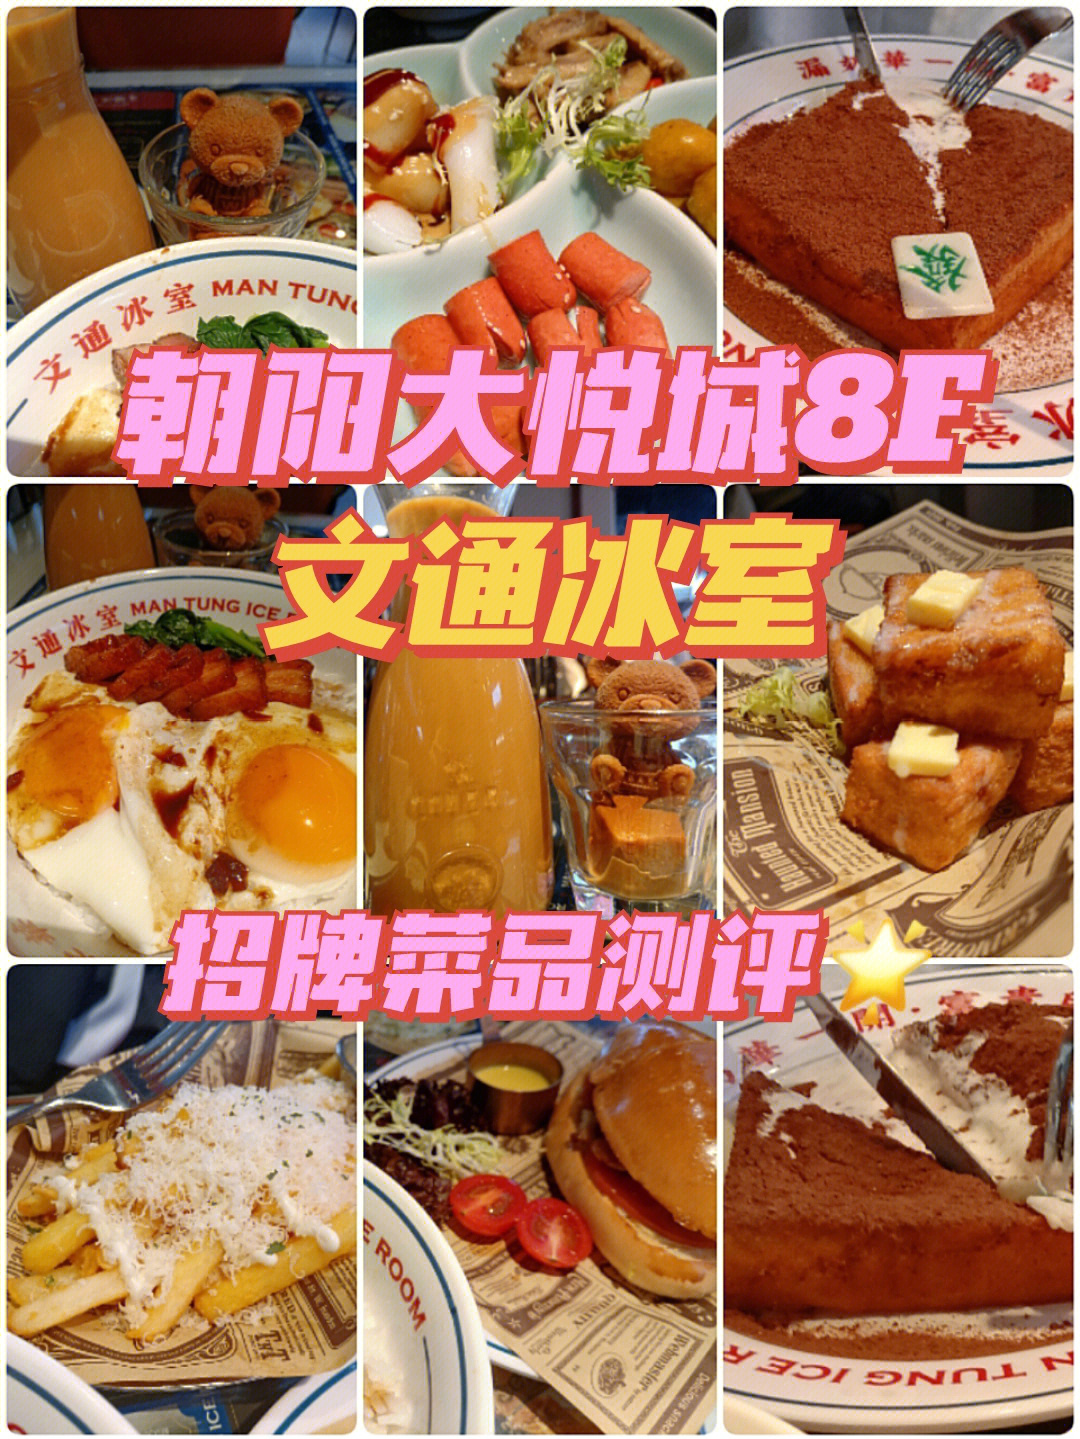 和同学去打卡了朝悦的网红茶餐厅99坐标:北京朝阳大悦城8f 文通冰室